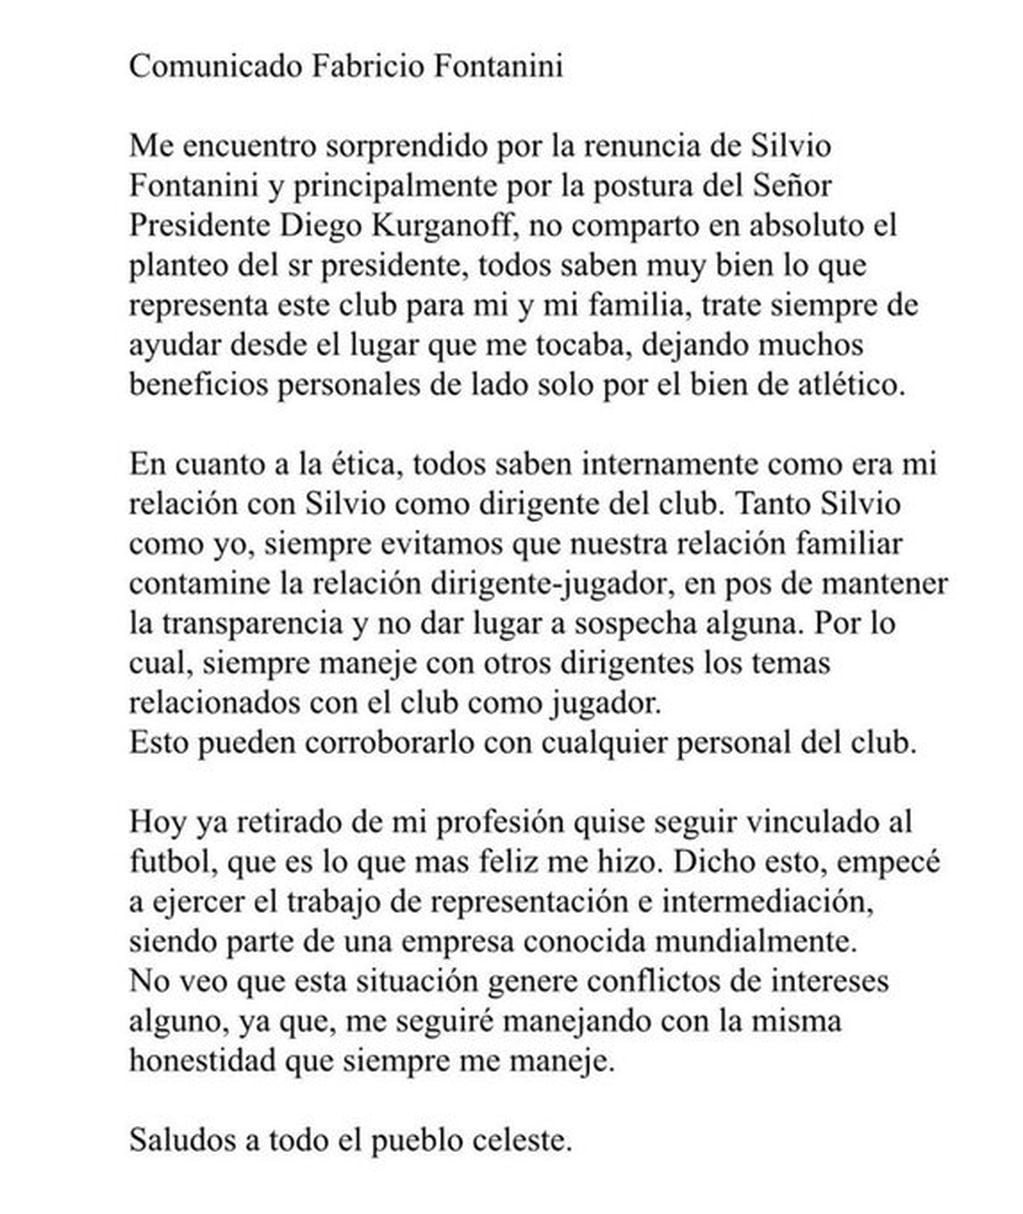 La carta de Fabricio Fontanini luego del escándalo en Atlético